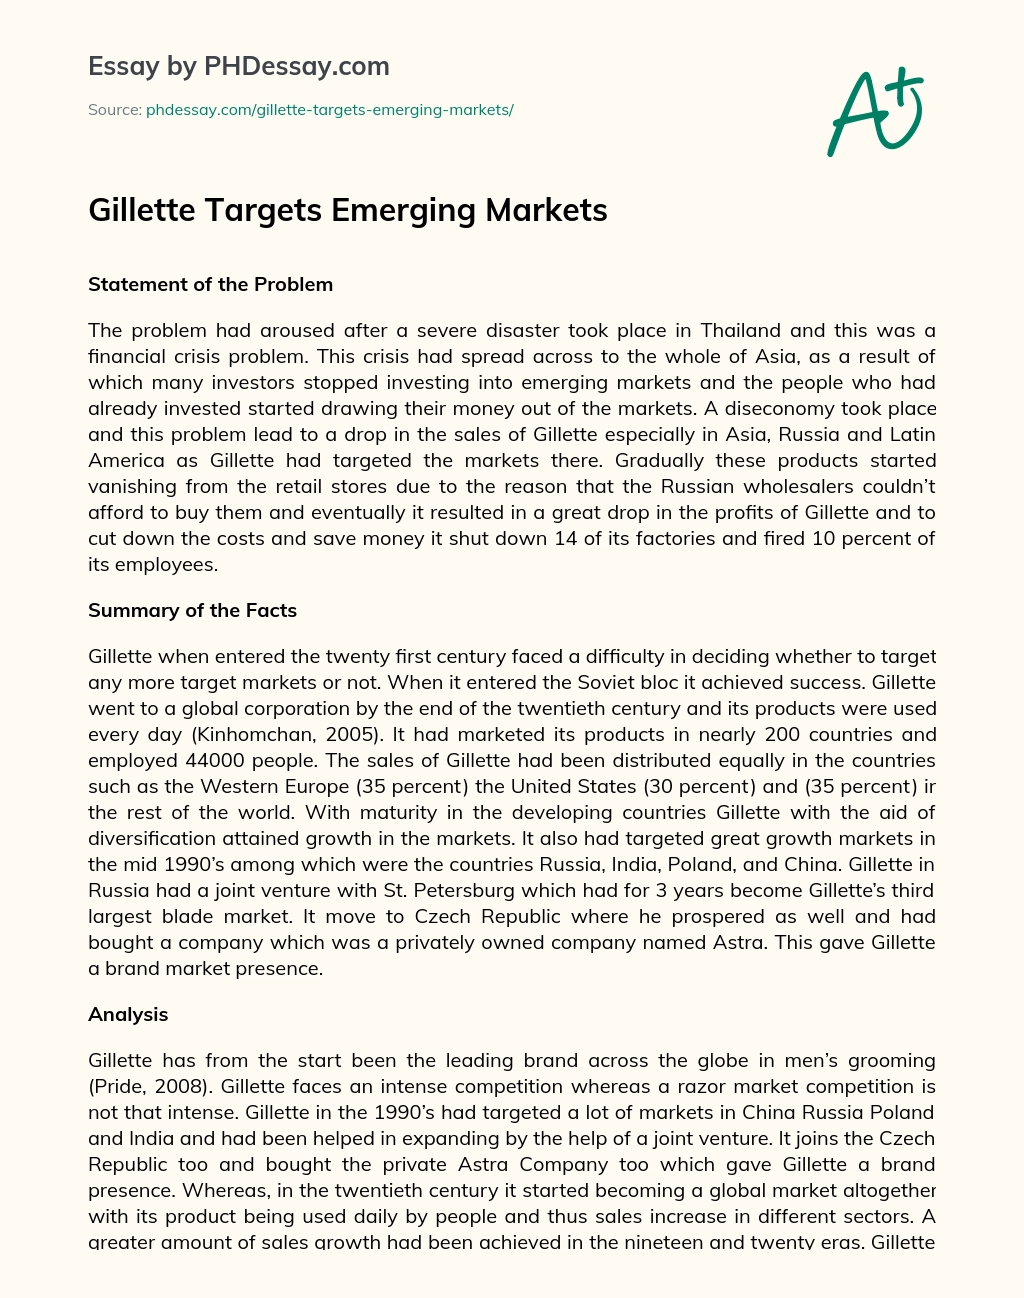 Gillette Targets Emerging Markets essay